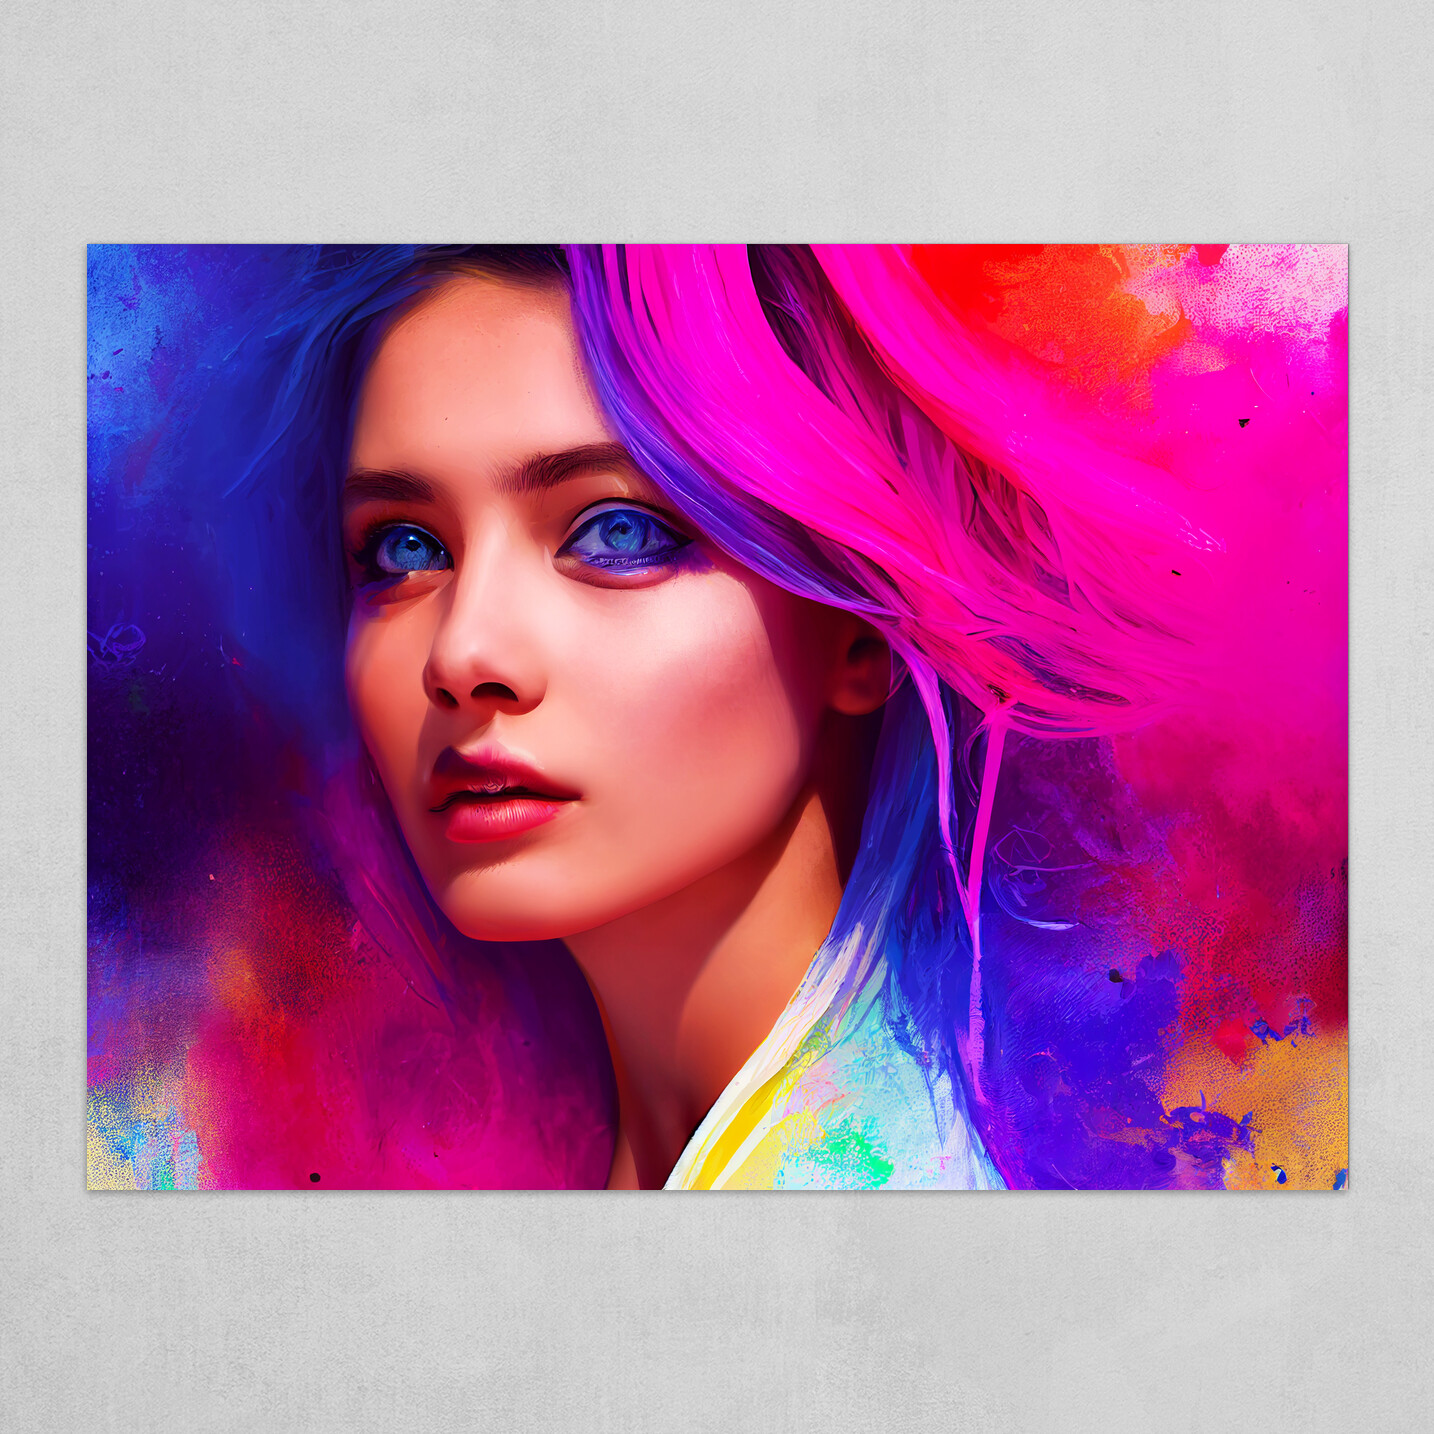 ArtStation - Colorful Girl - Art Print